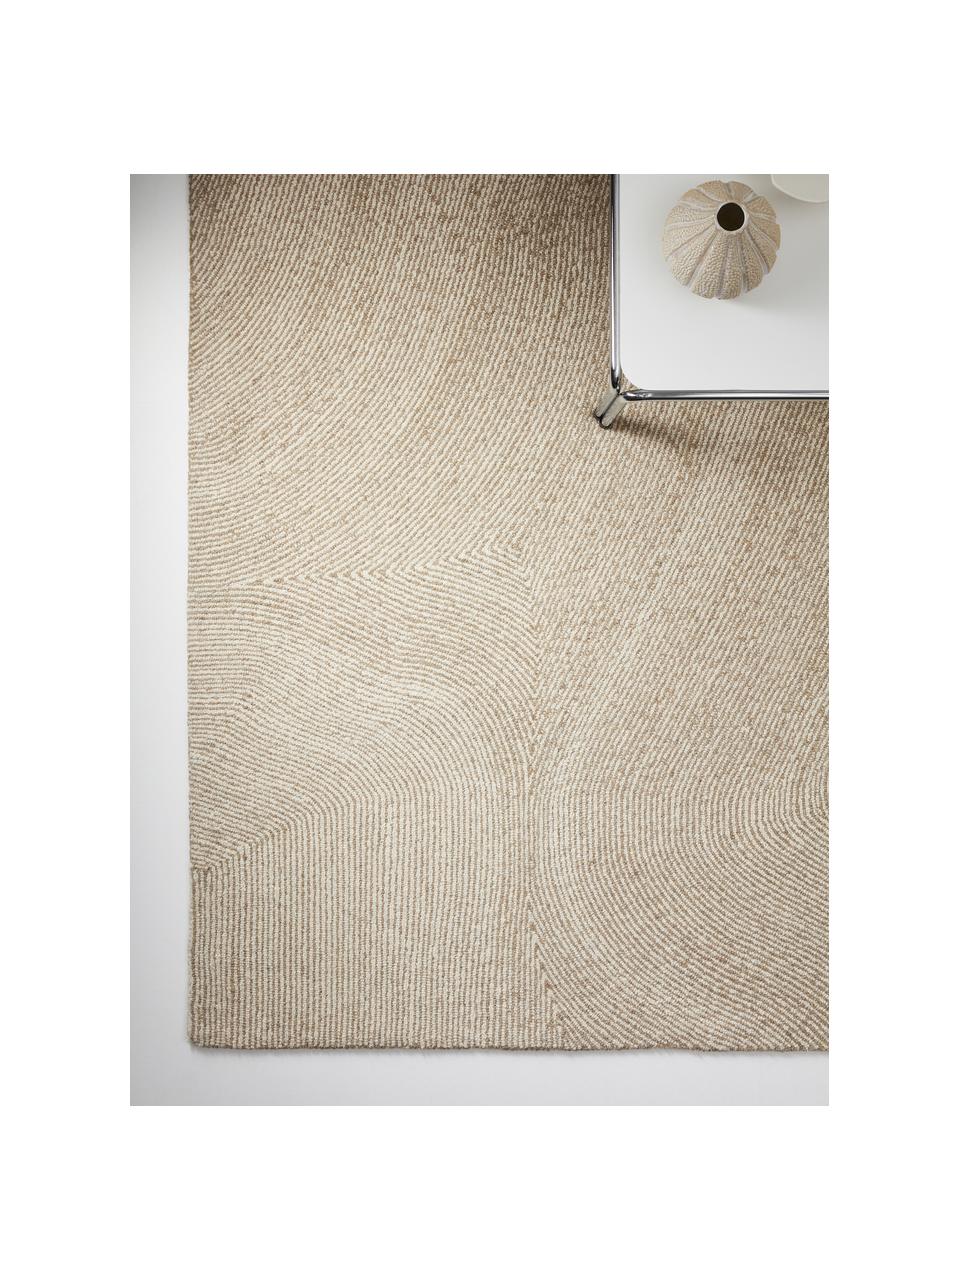 Großer handgewebter Teppich Canyon mit wellenförmiger Musterung in Beige/Weiß, 51% Polyester, 49% Wolle, Beige, B 200 x L 300 cm (Größe L)